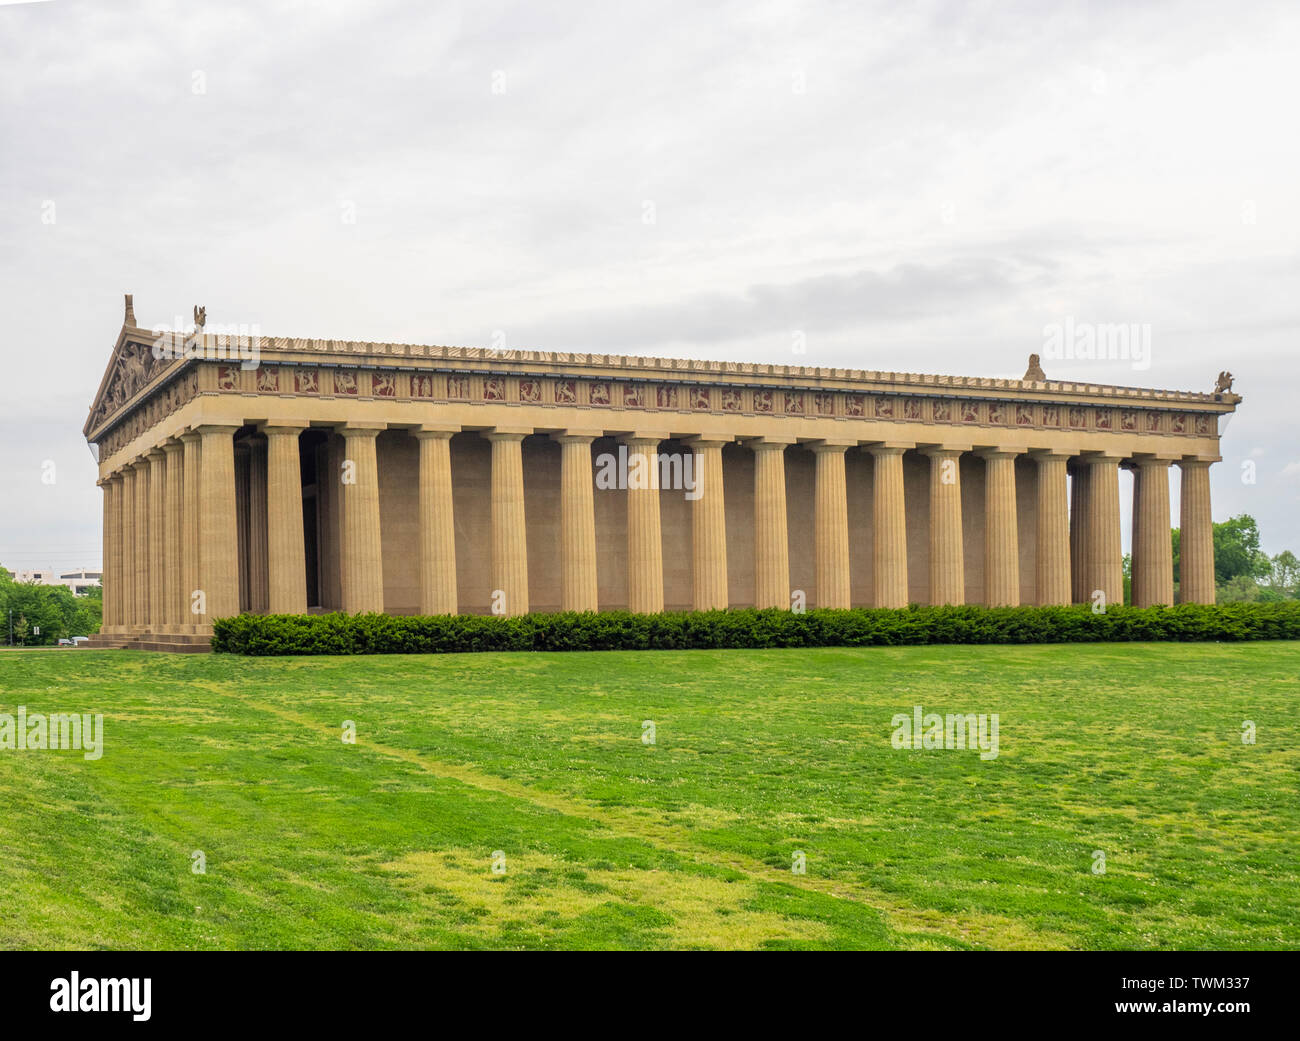 Réplica a escala completa del Partenón en el Parque Centenario de Nashville, Tennessee, EE.UU.. Foto de stock